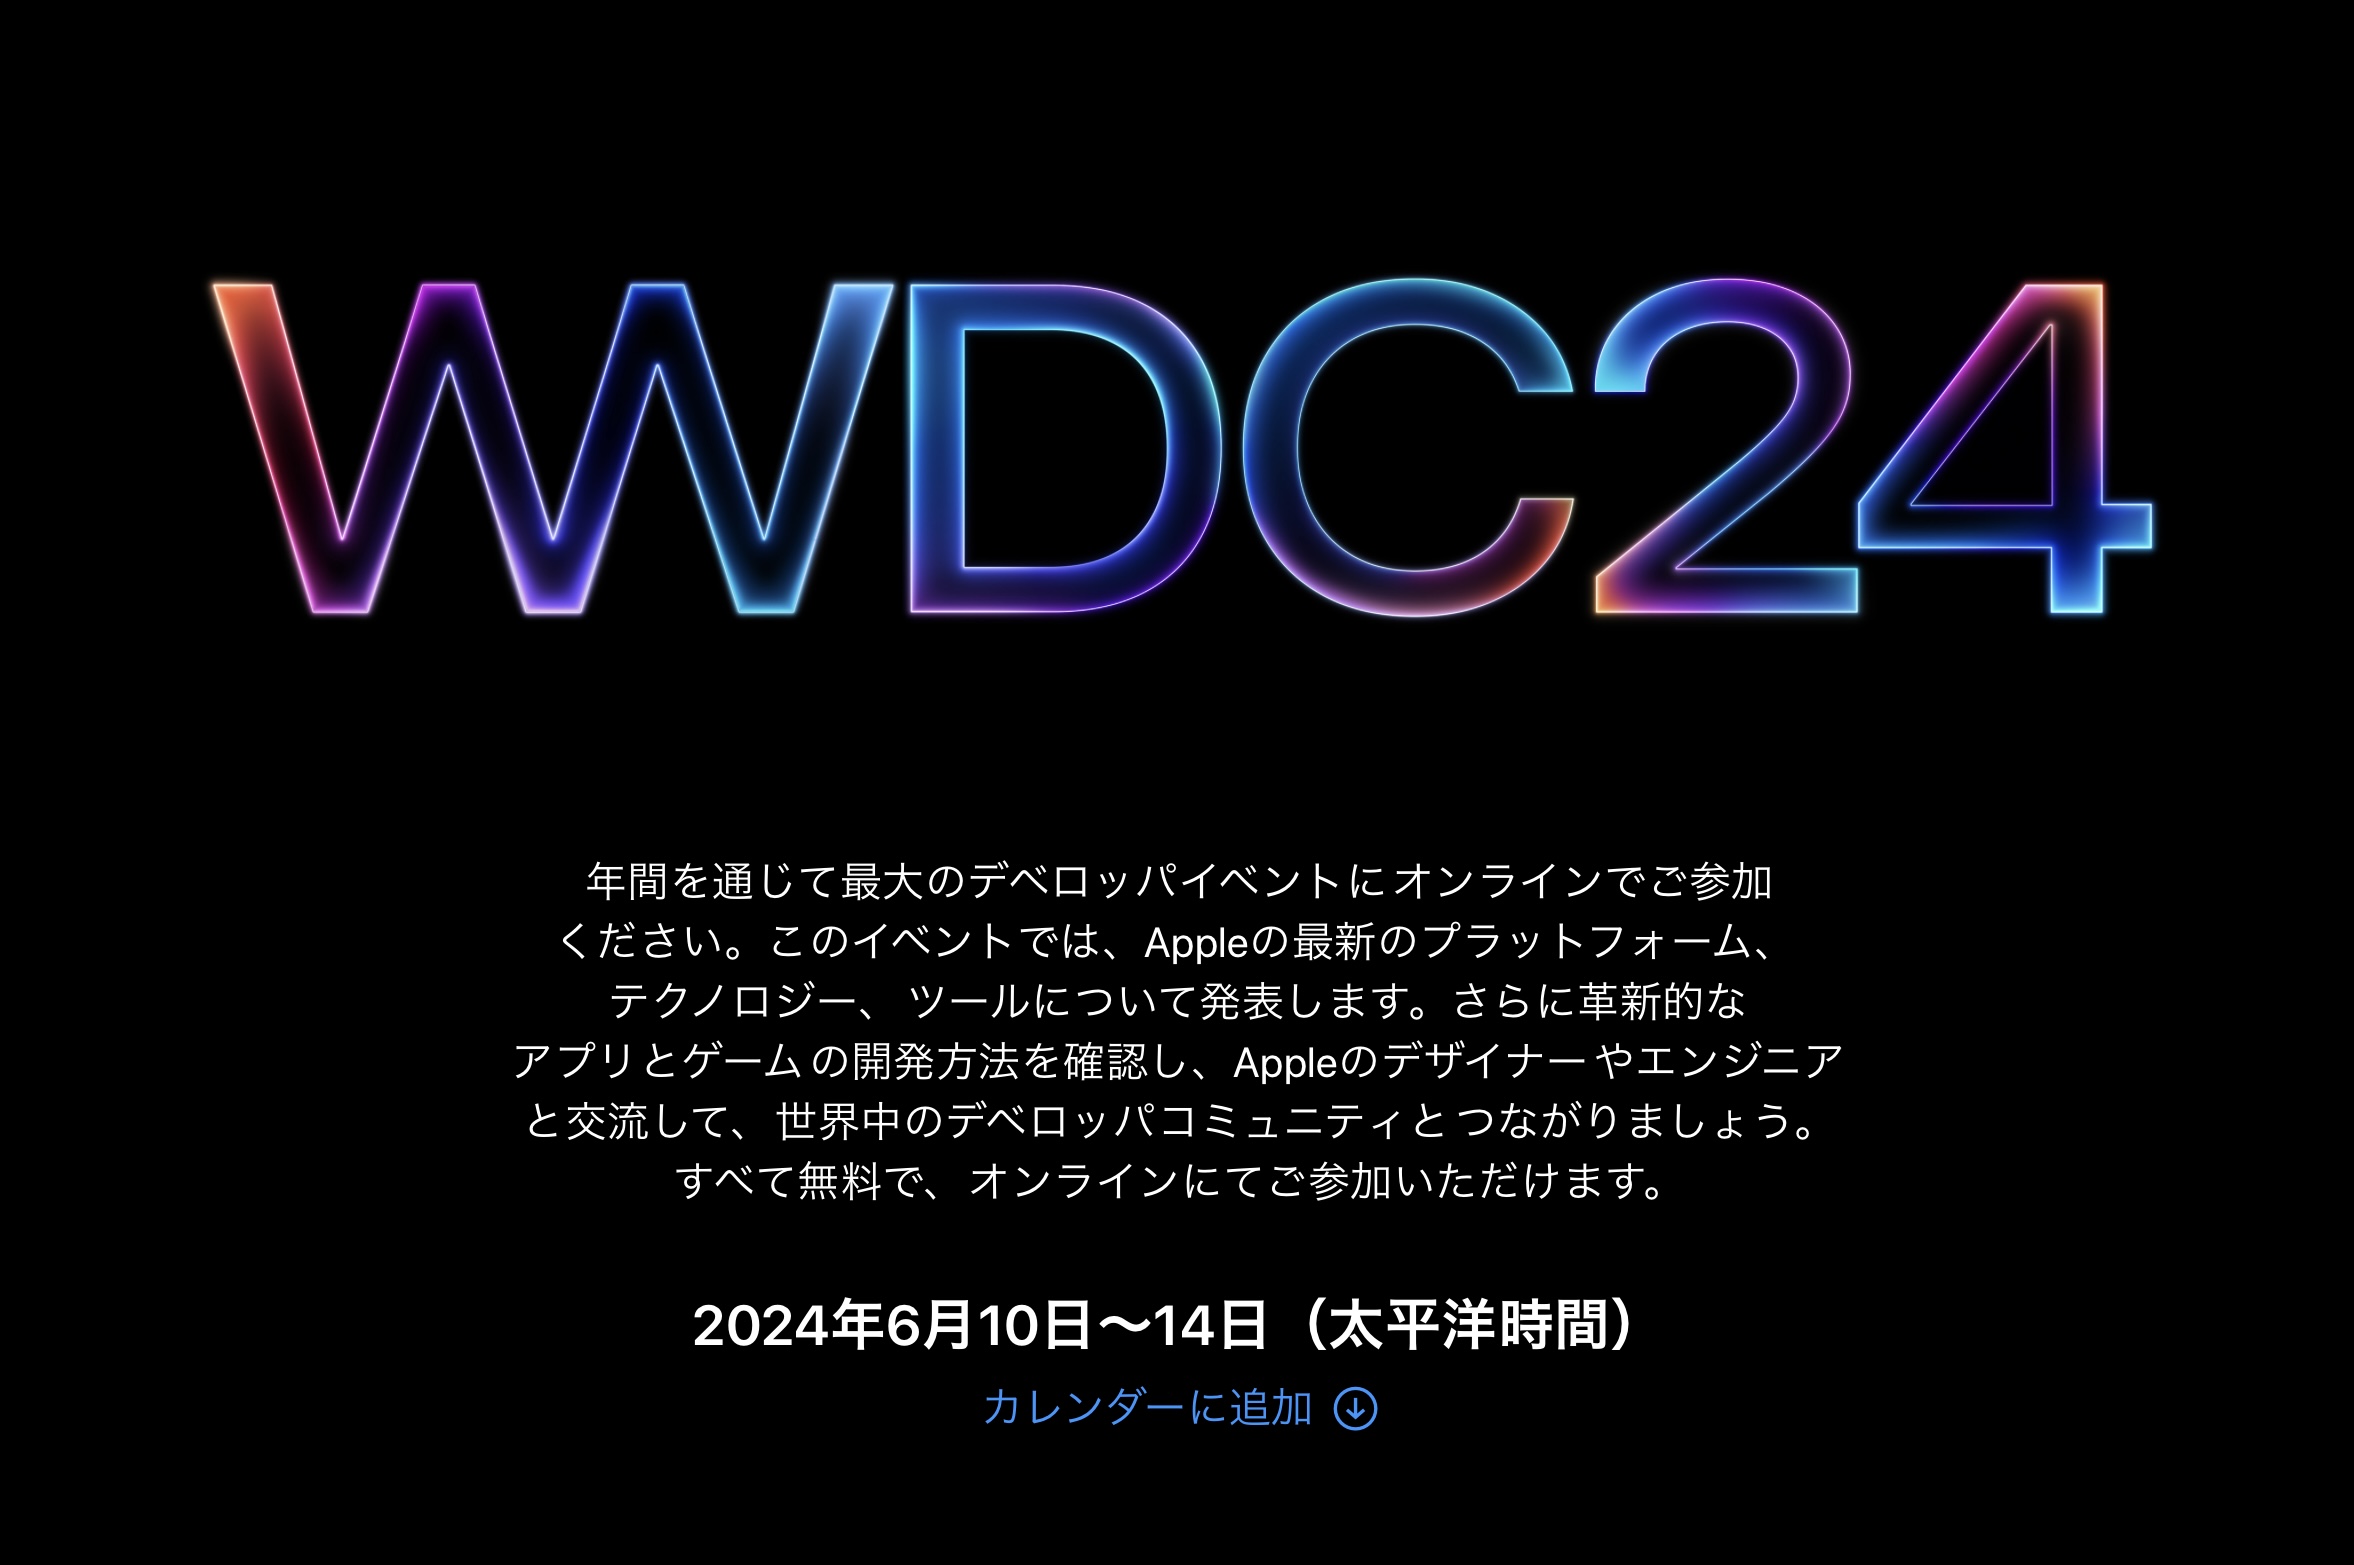 WWDC24発表